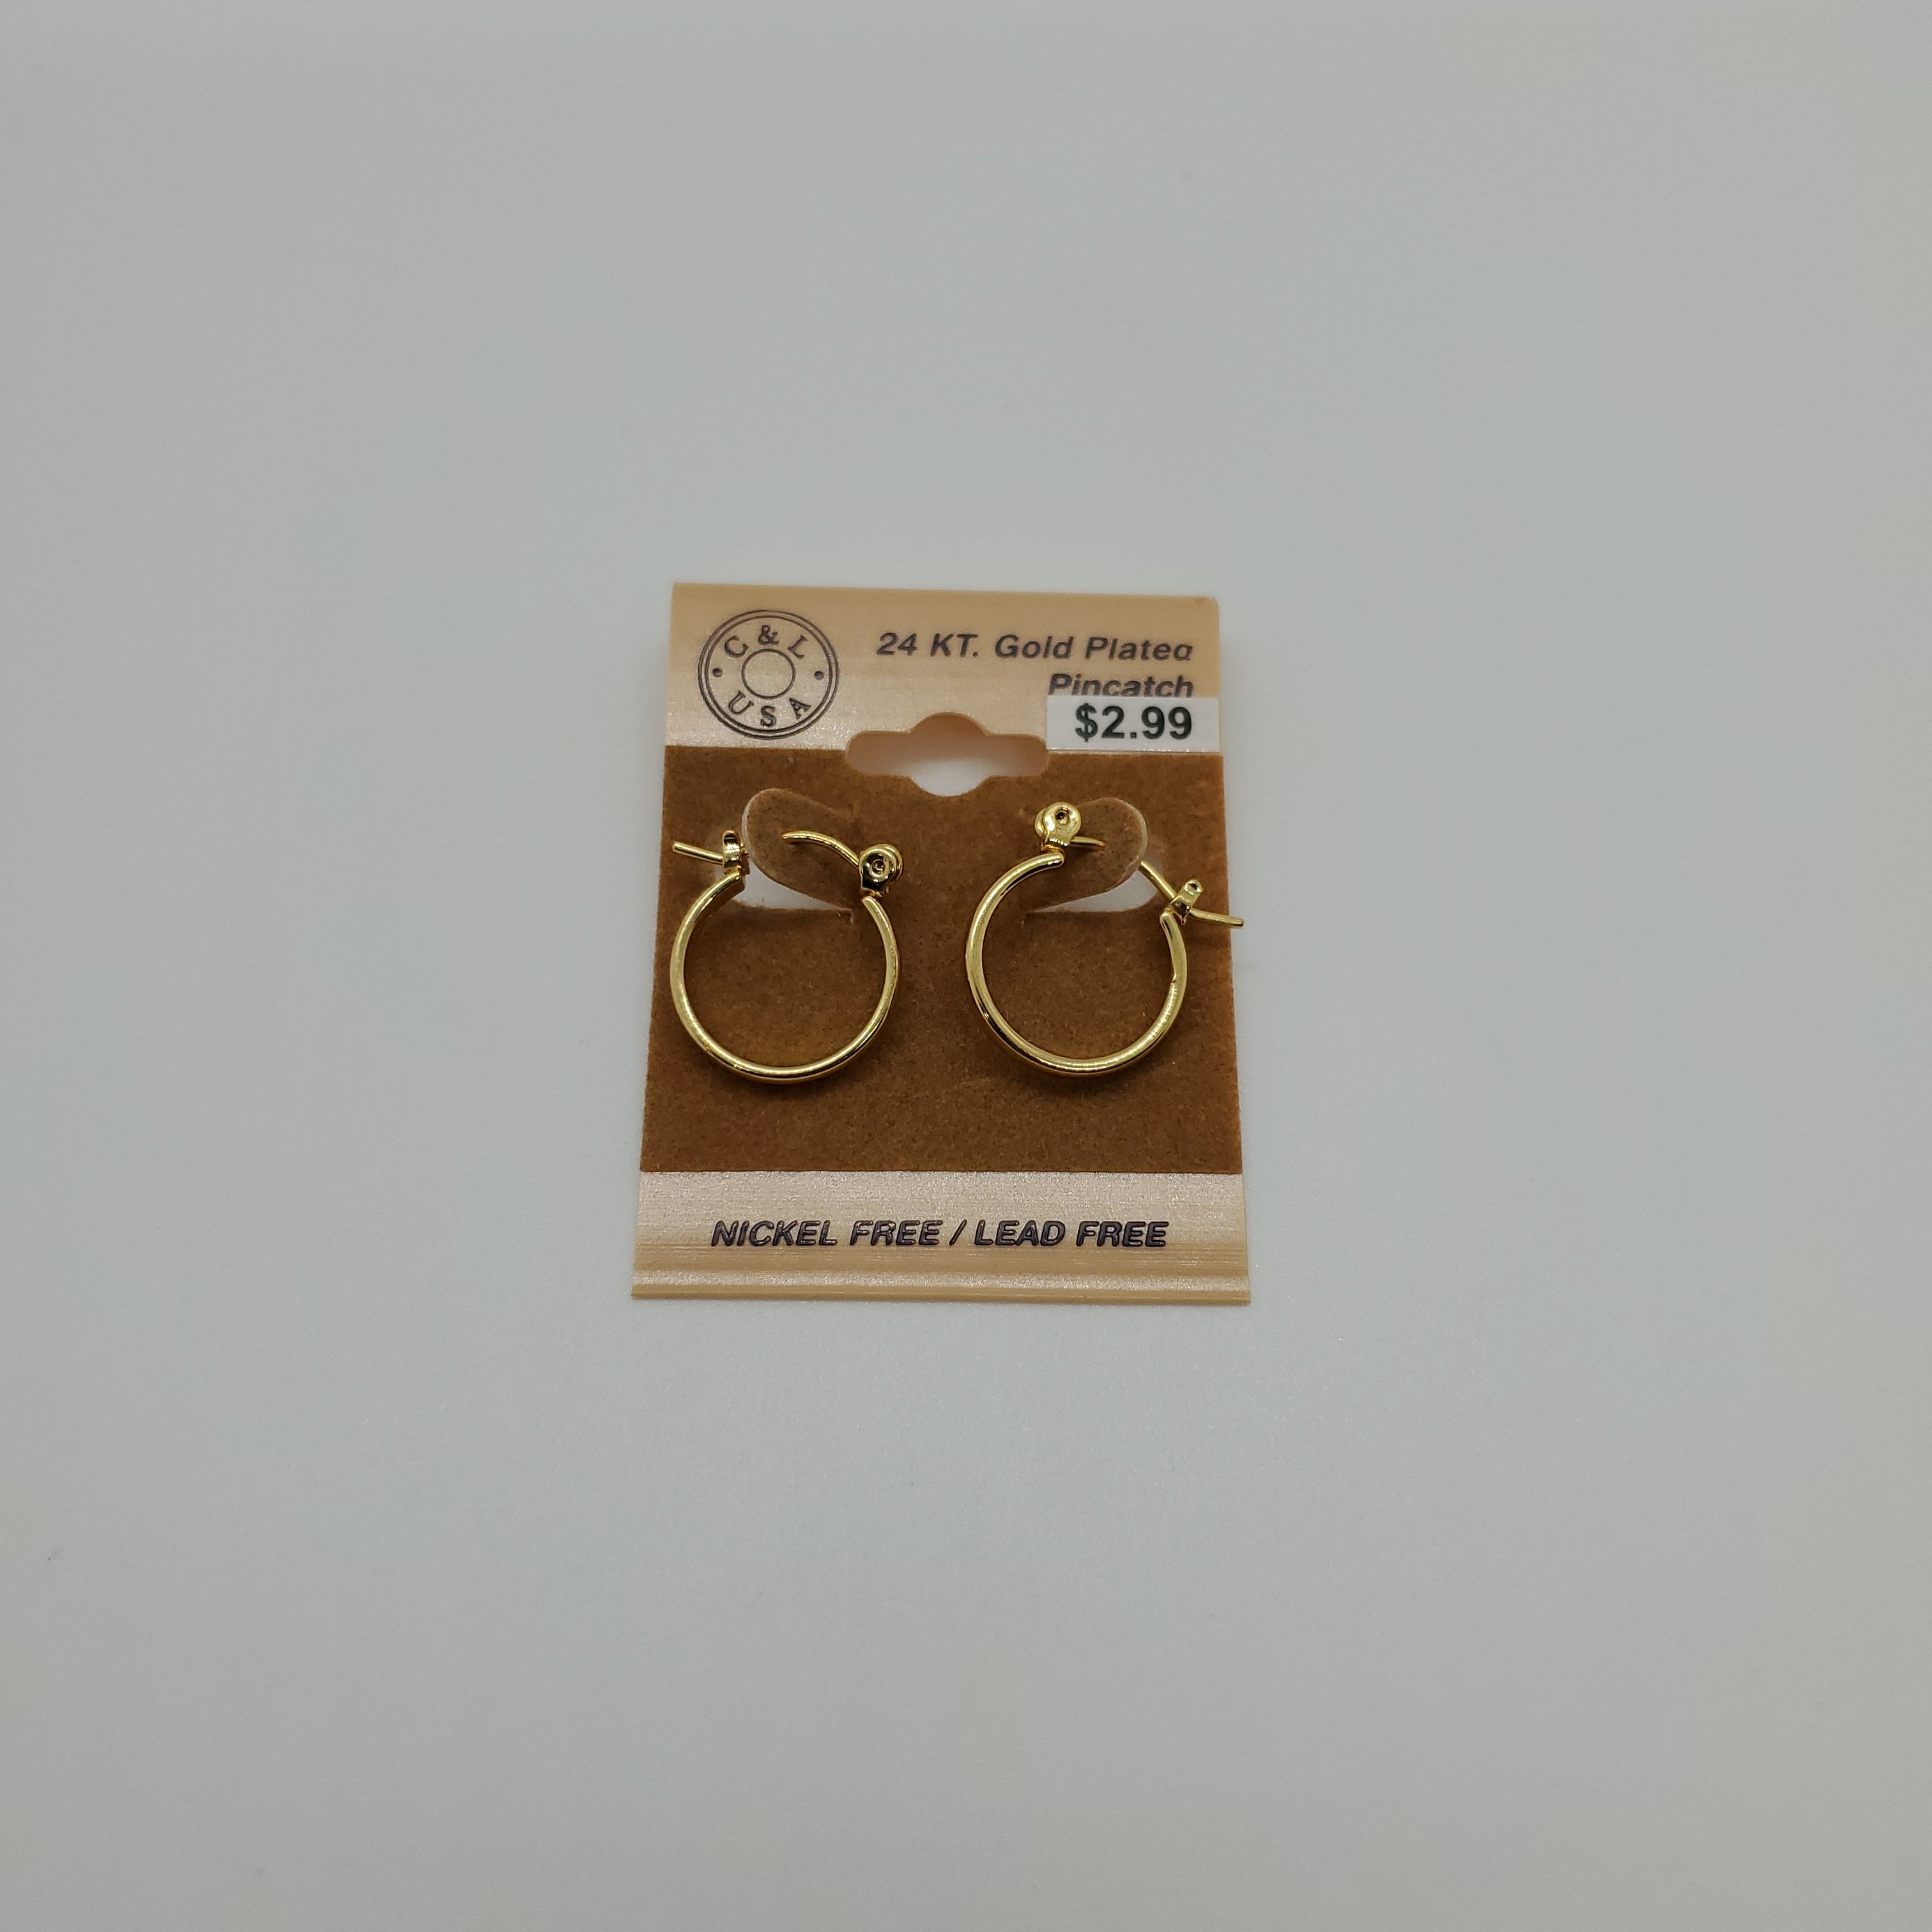 24KT Gold Plated Pincatch Hoop Earrings NPK112 - Beauty Bar & Supply